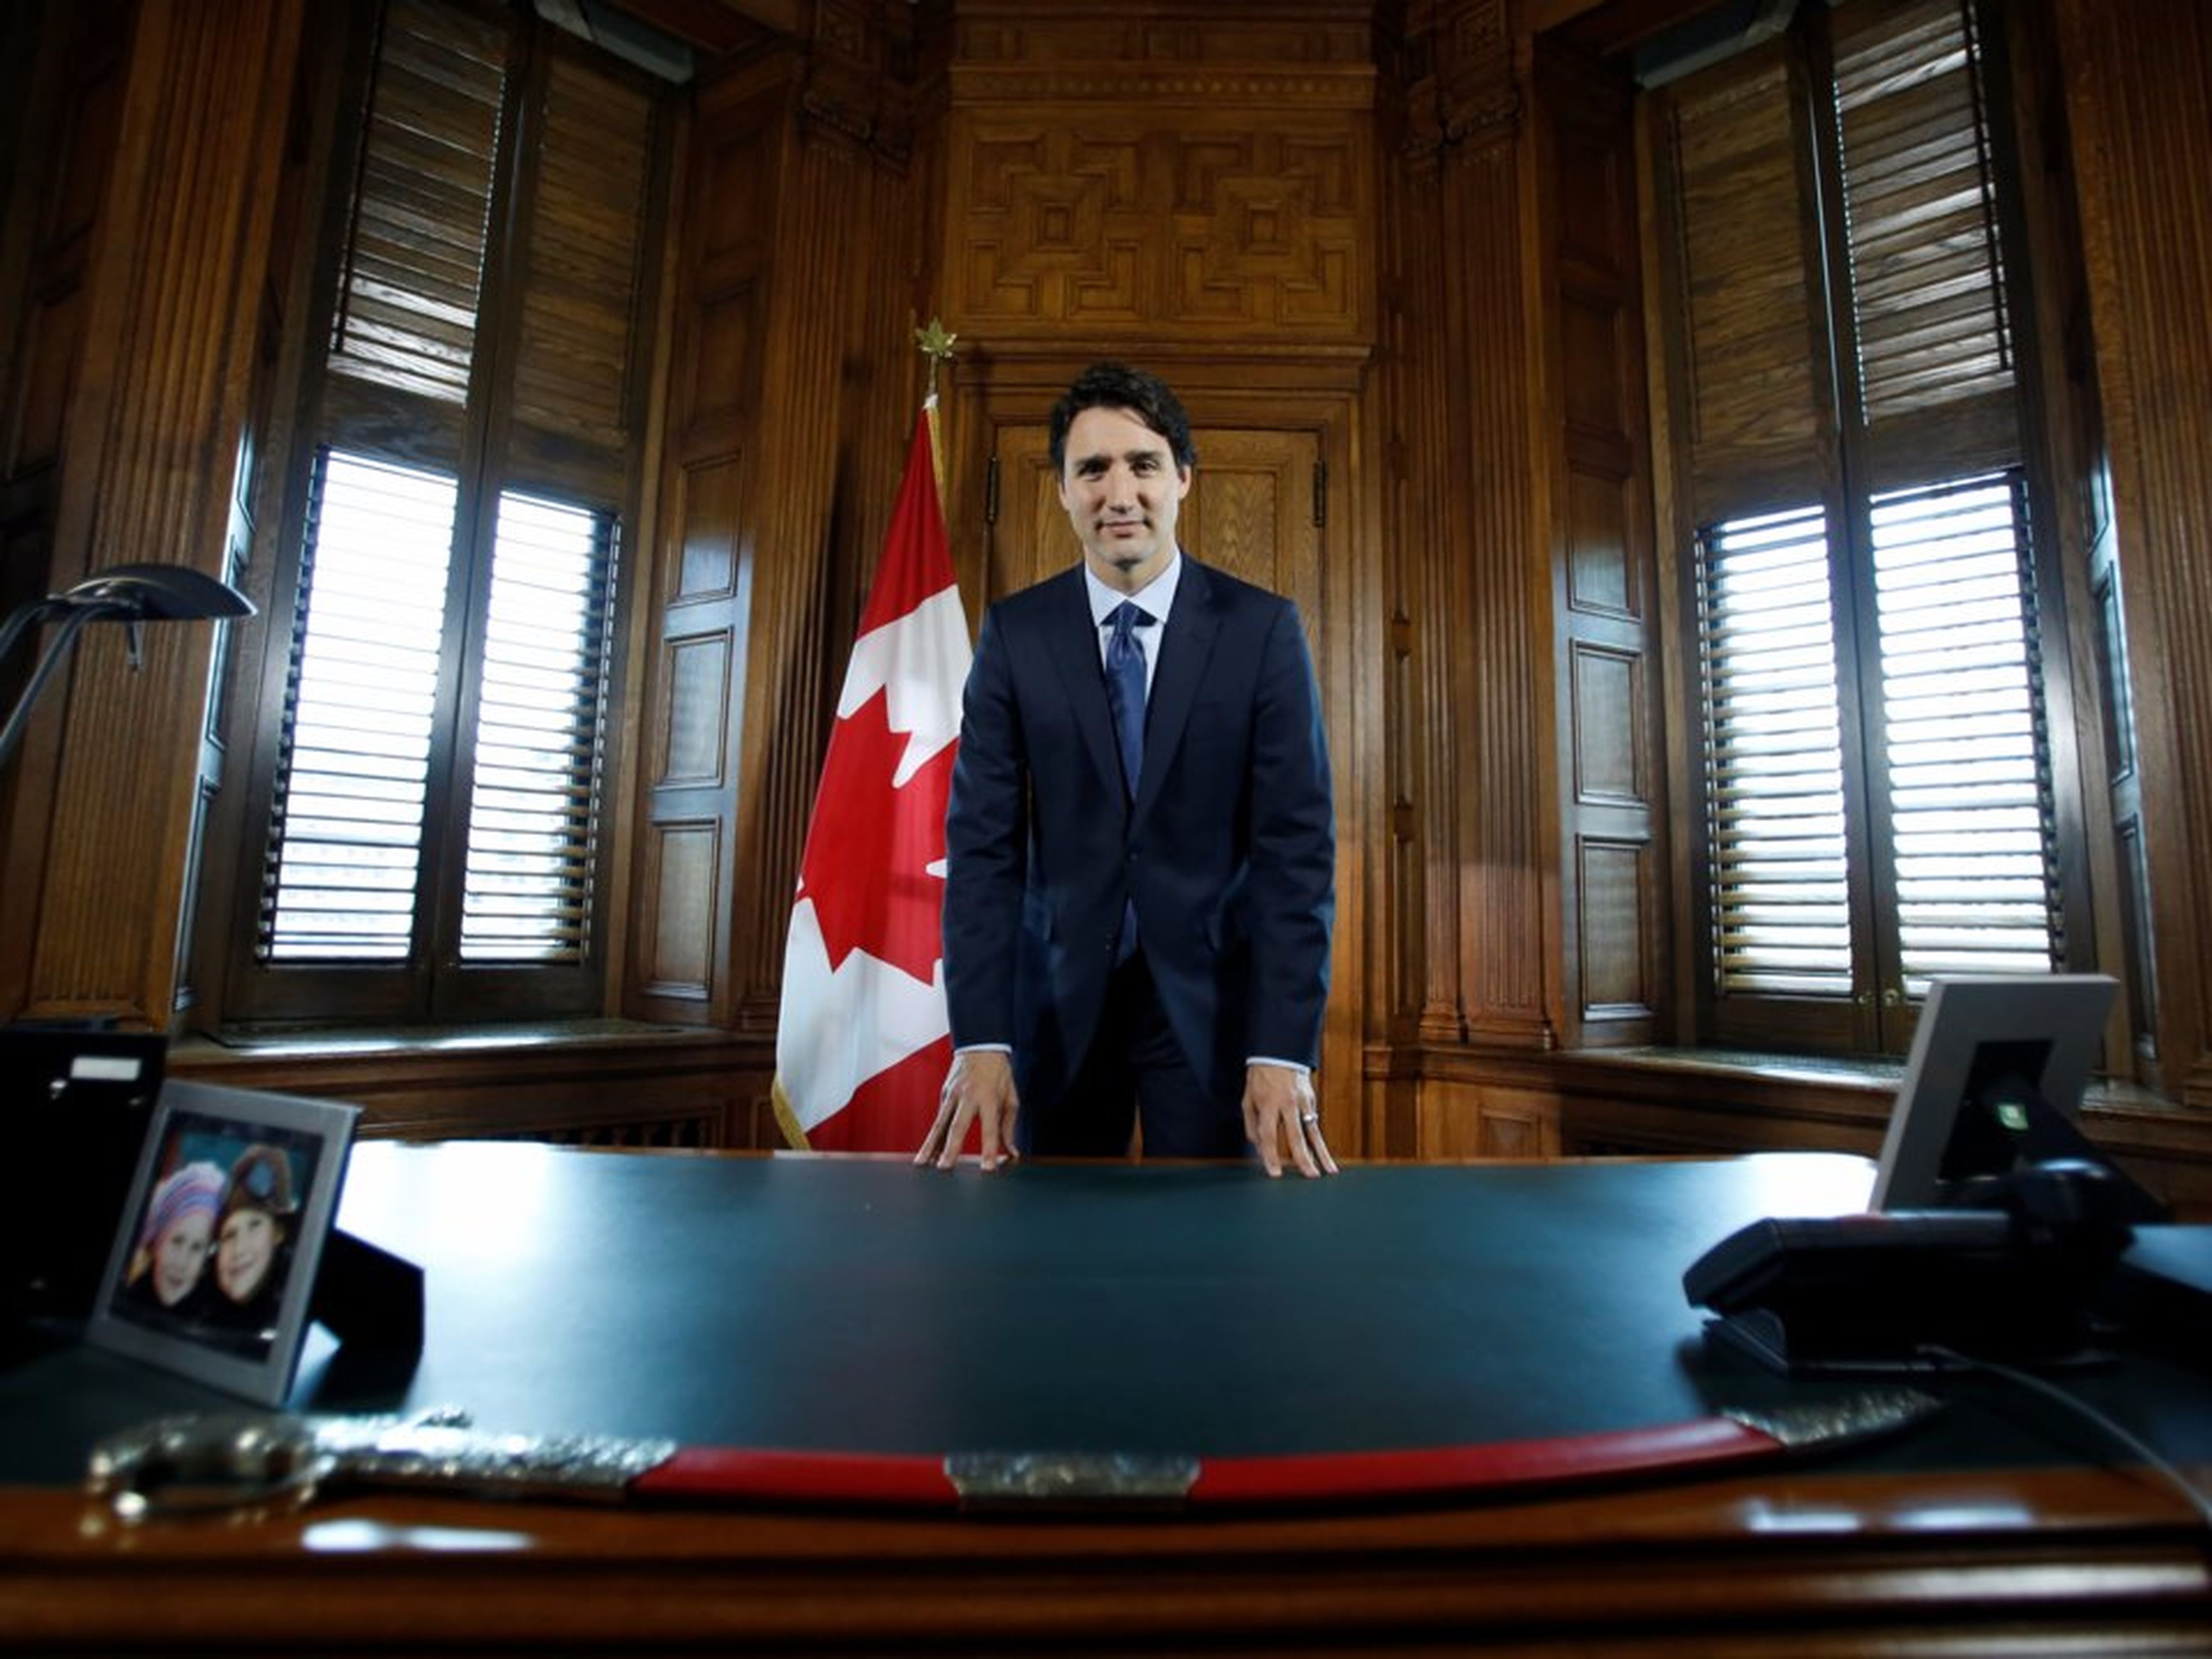 El primer ministro de Canadá, Justin Trudeau, posa en su escritorio tras una entrevista con Reuters en su oficina en Parliament Hill en Ottawa, Ontario, Canadá, el 19 de mayo de 2016.